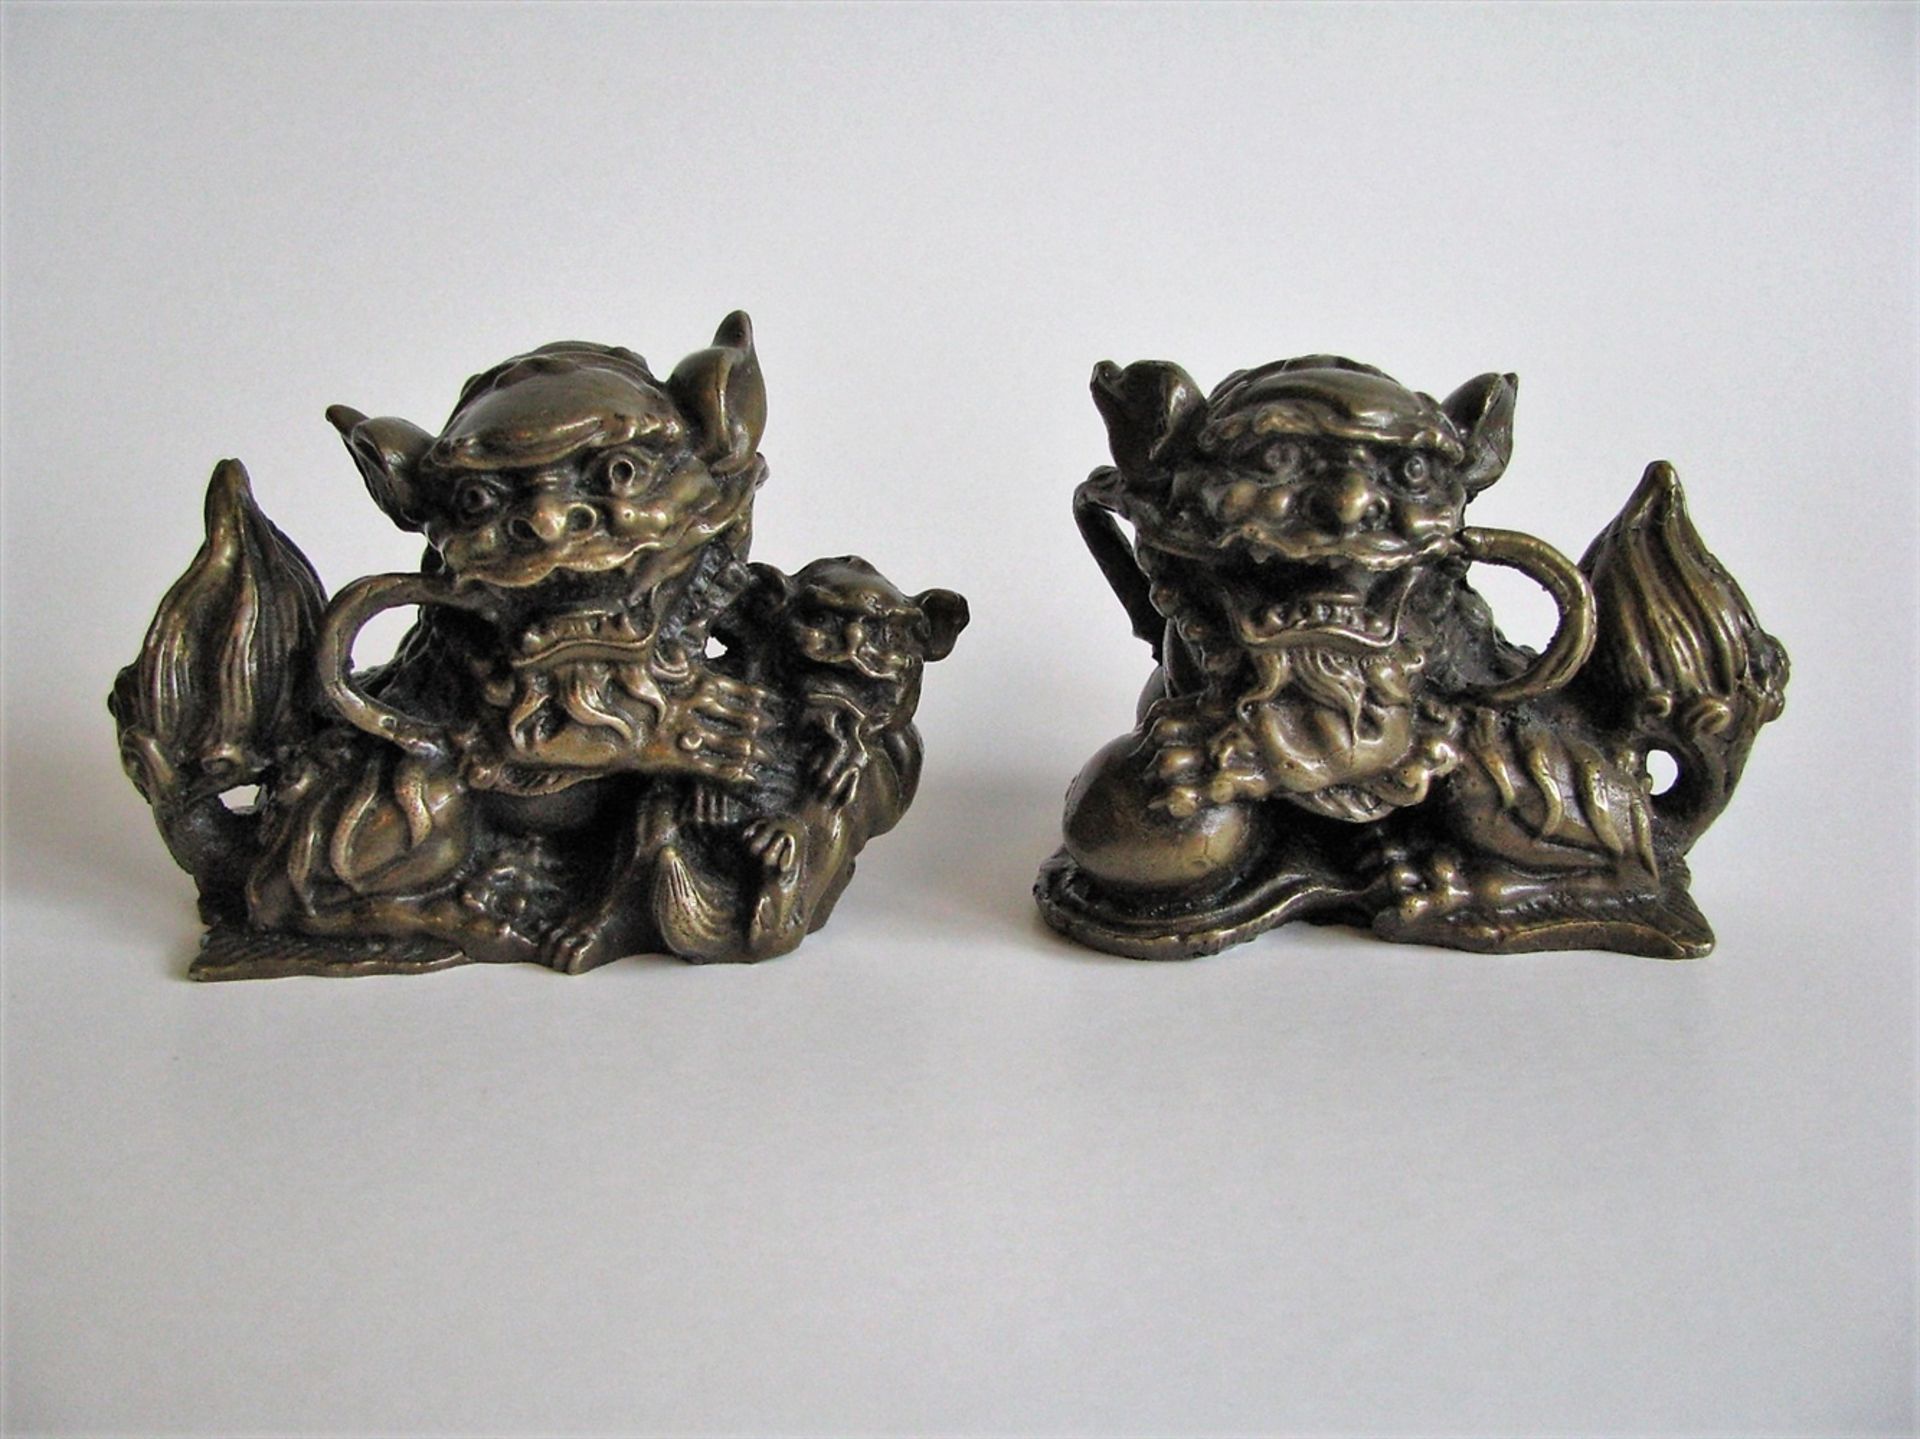 Paar Wächterlöwen, China, Bronze, 20. Jahrhundert, 6,5 x 8,5 x 4,5 cm.- - -19.00 % buyer's premium